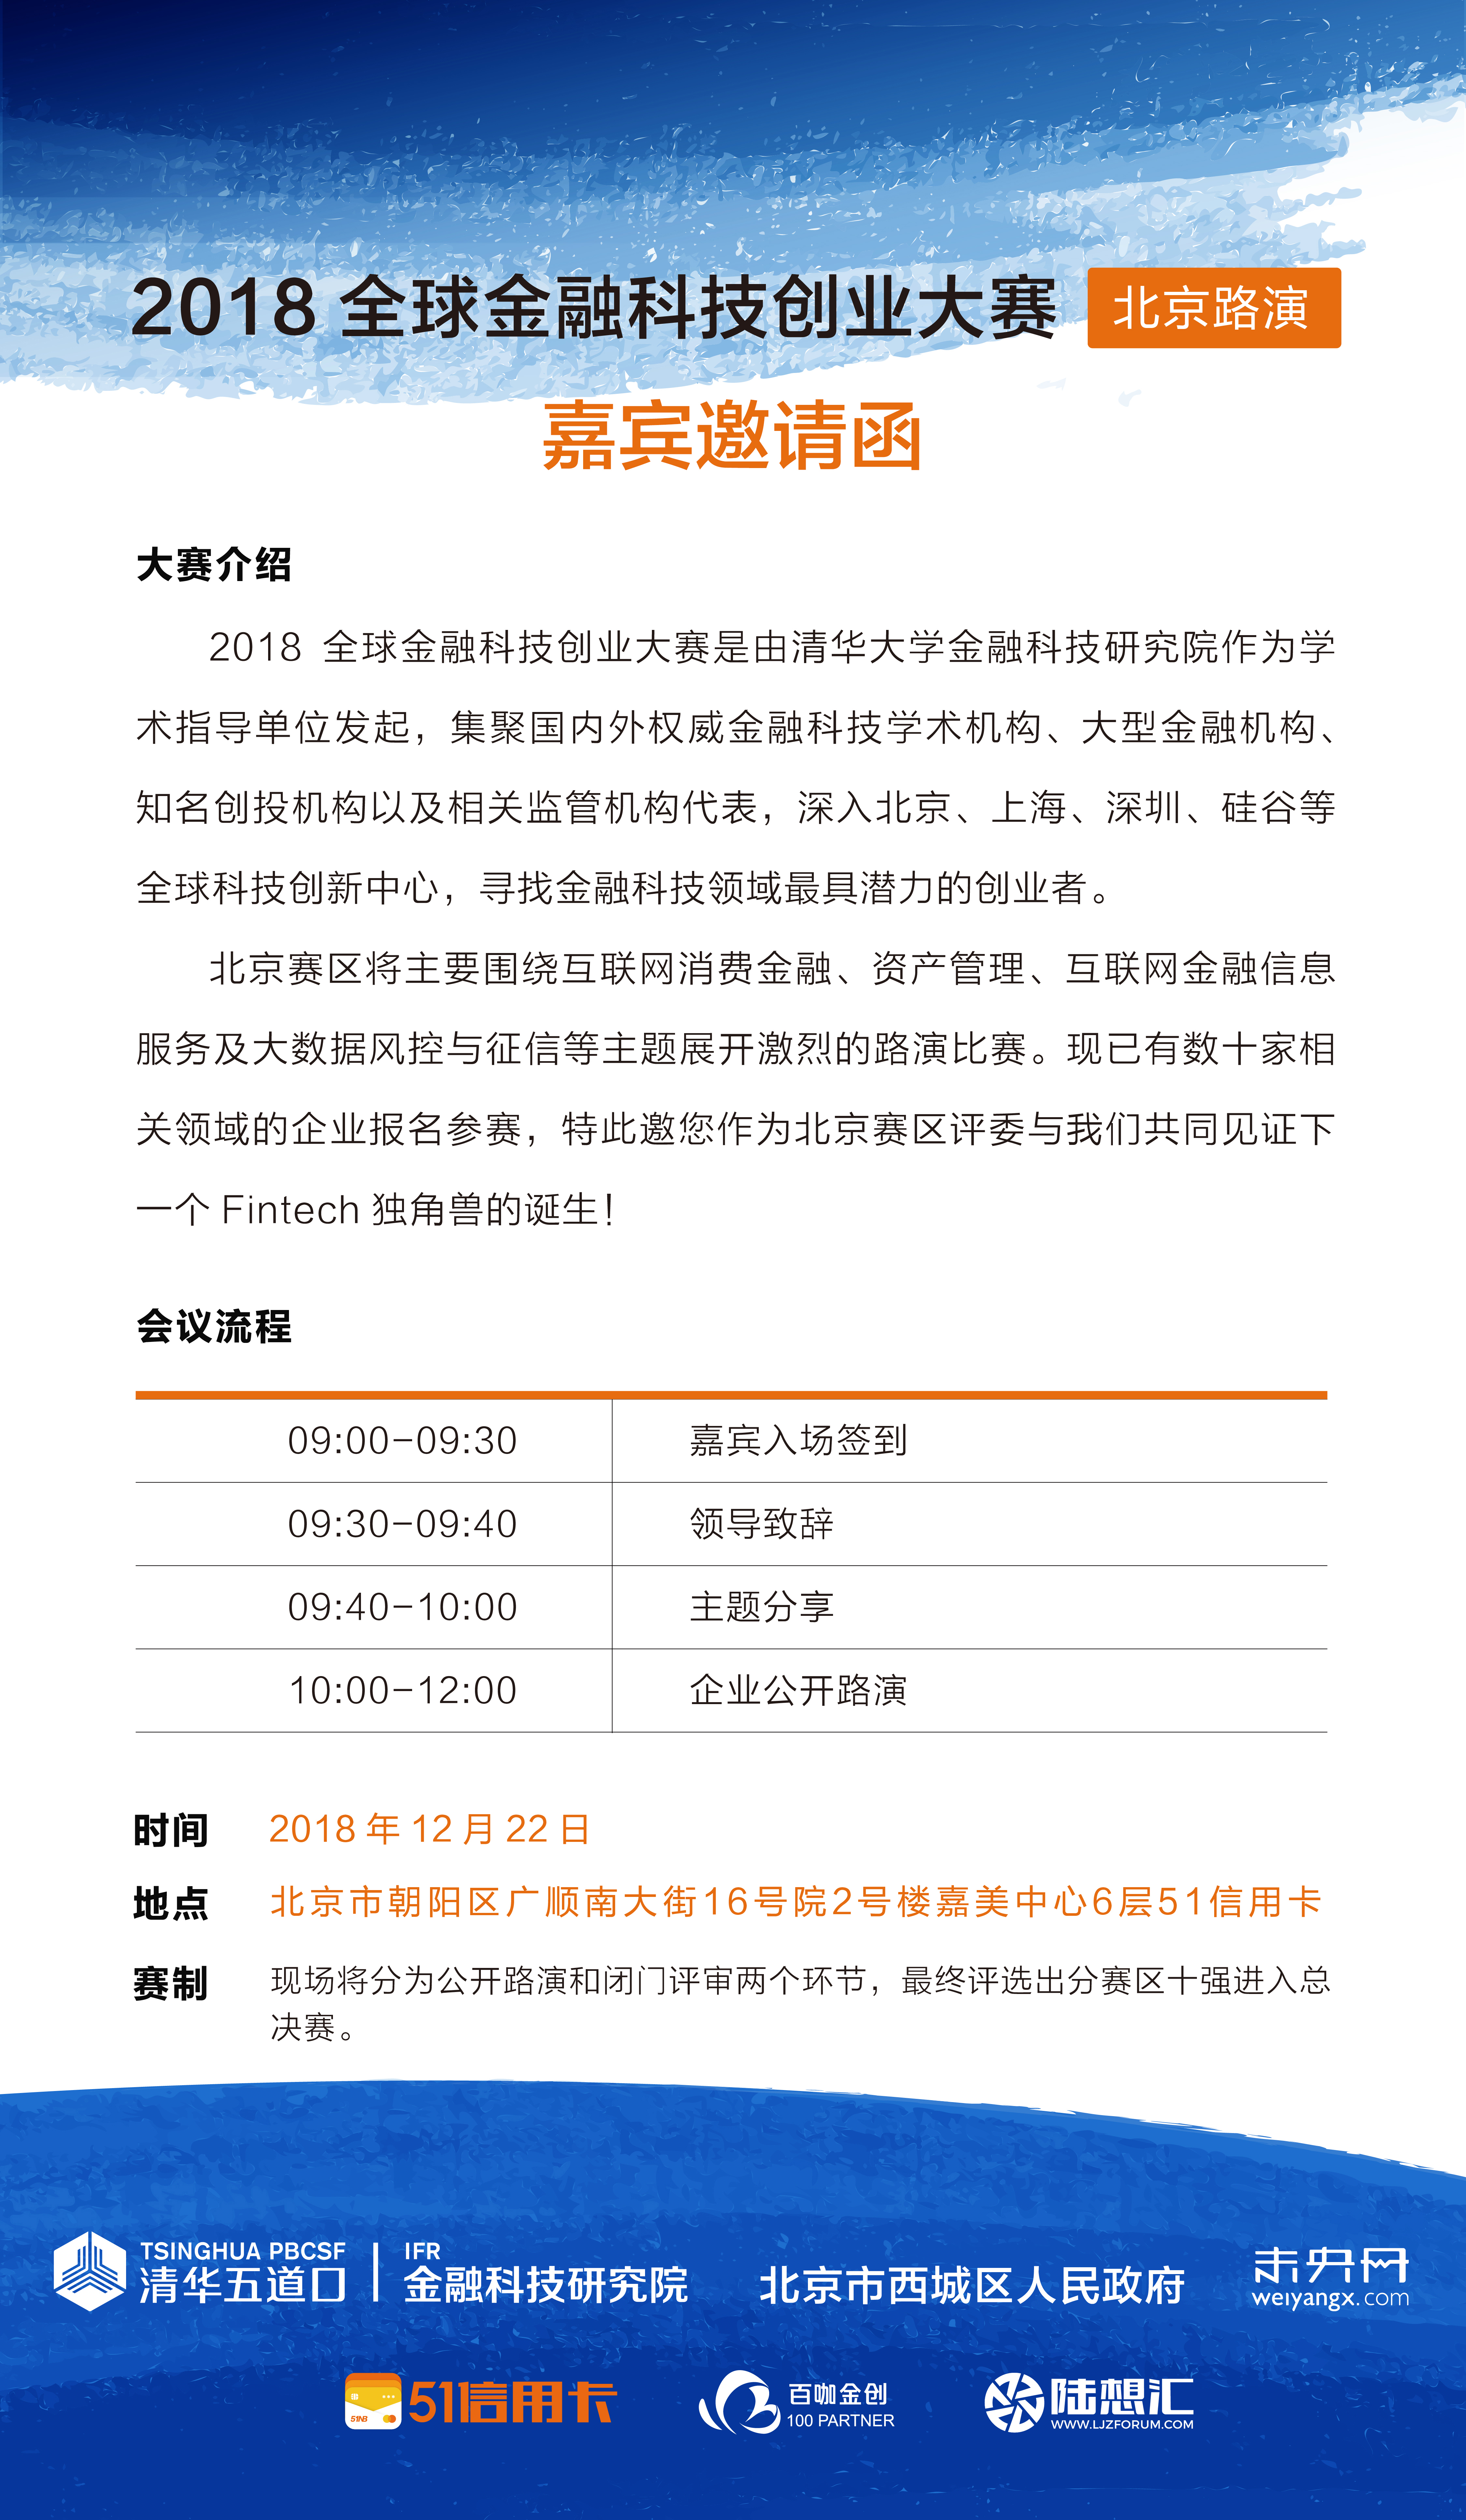 2018全球金融科技创业大赛北京路演 嘉宾邀请函